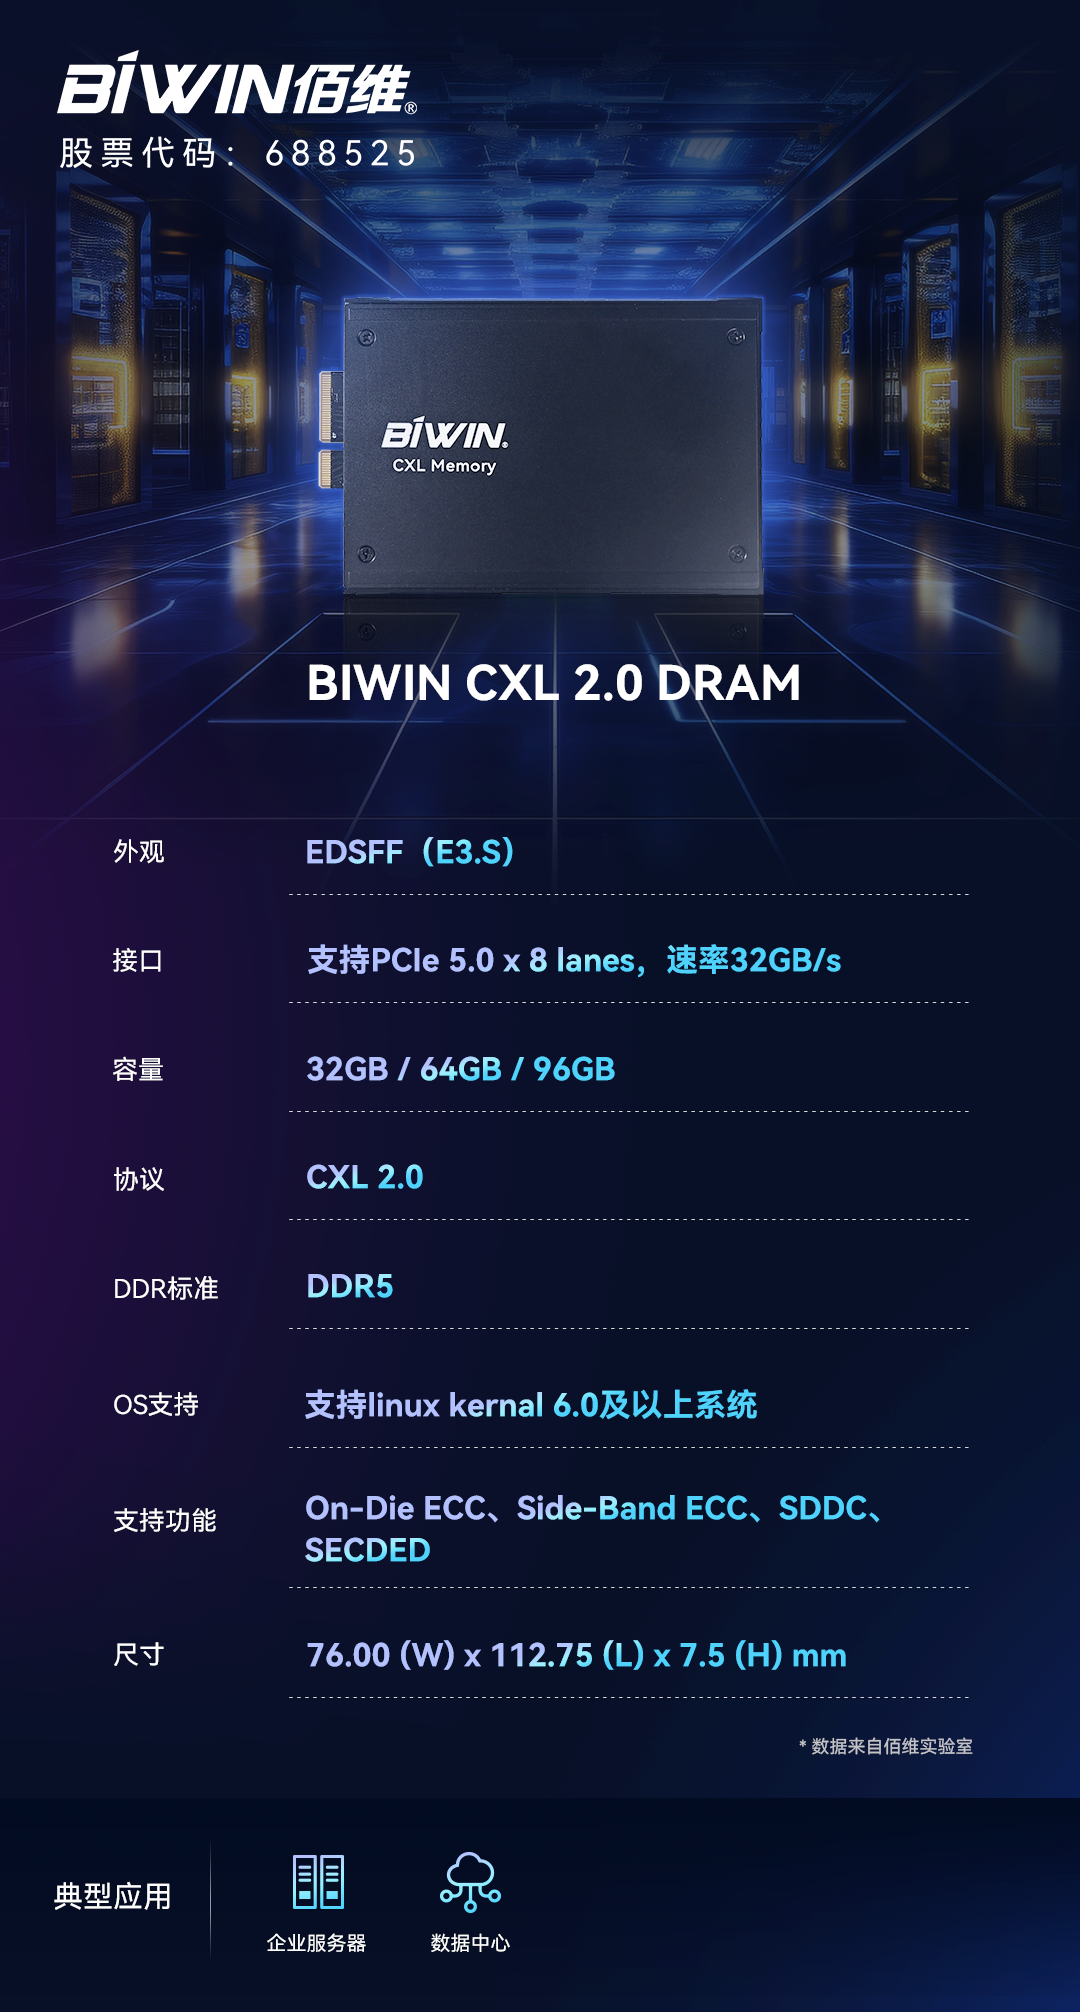 佰维发布CXL 2.0 DRAM，赋能高性能计算